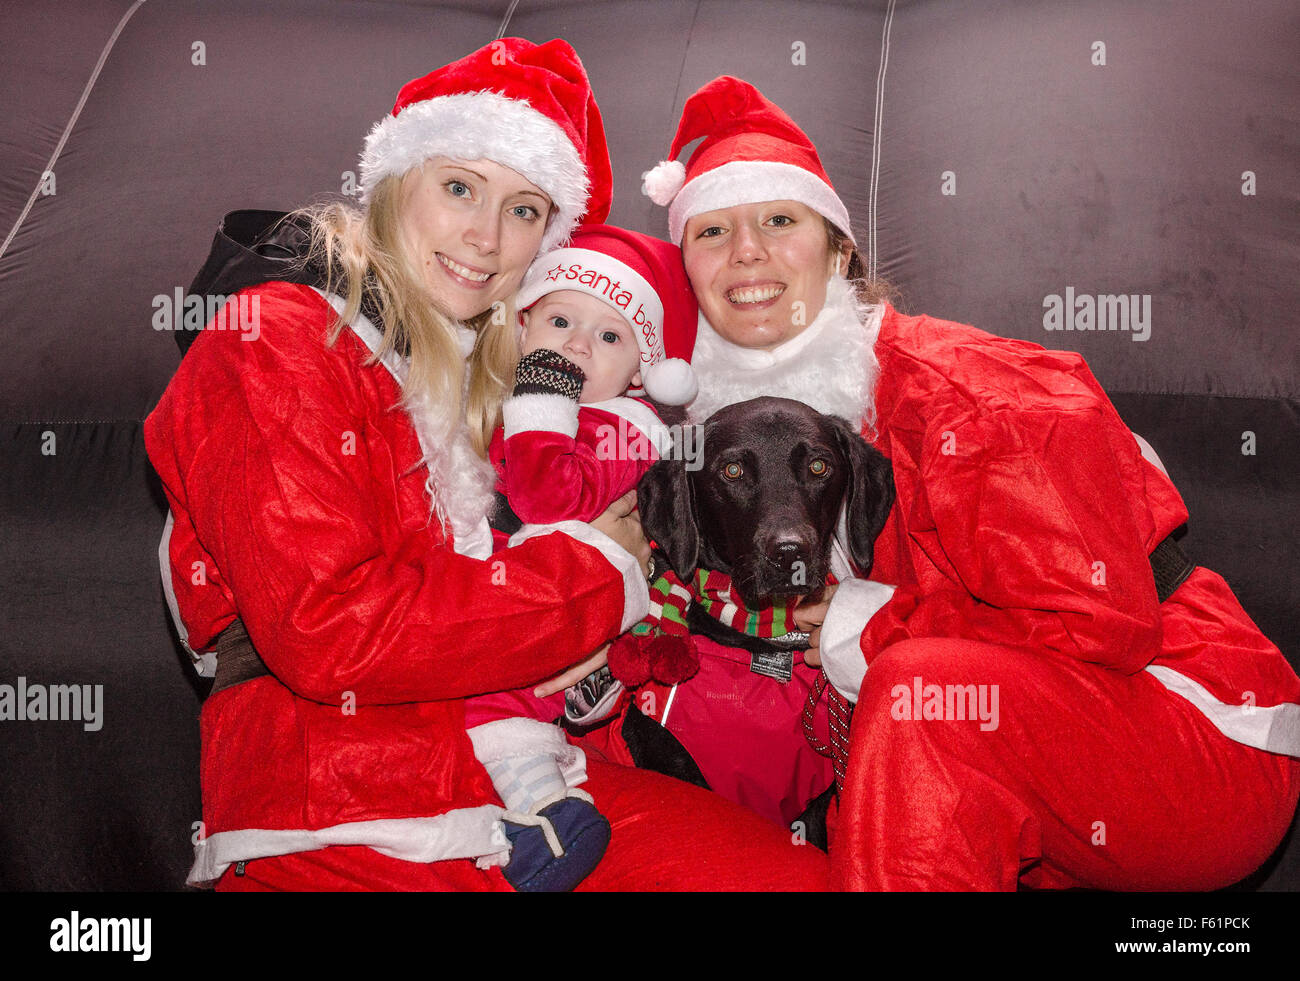 A charity santa fun run in truro, cornwall, uk Stock Photo